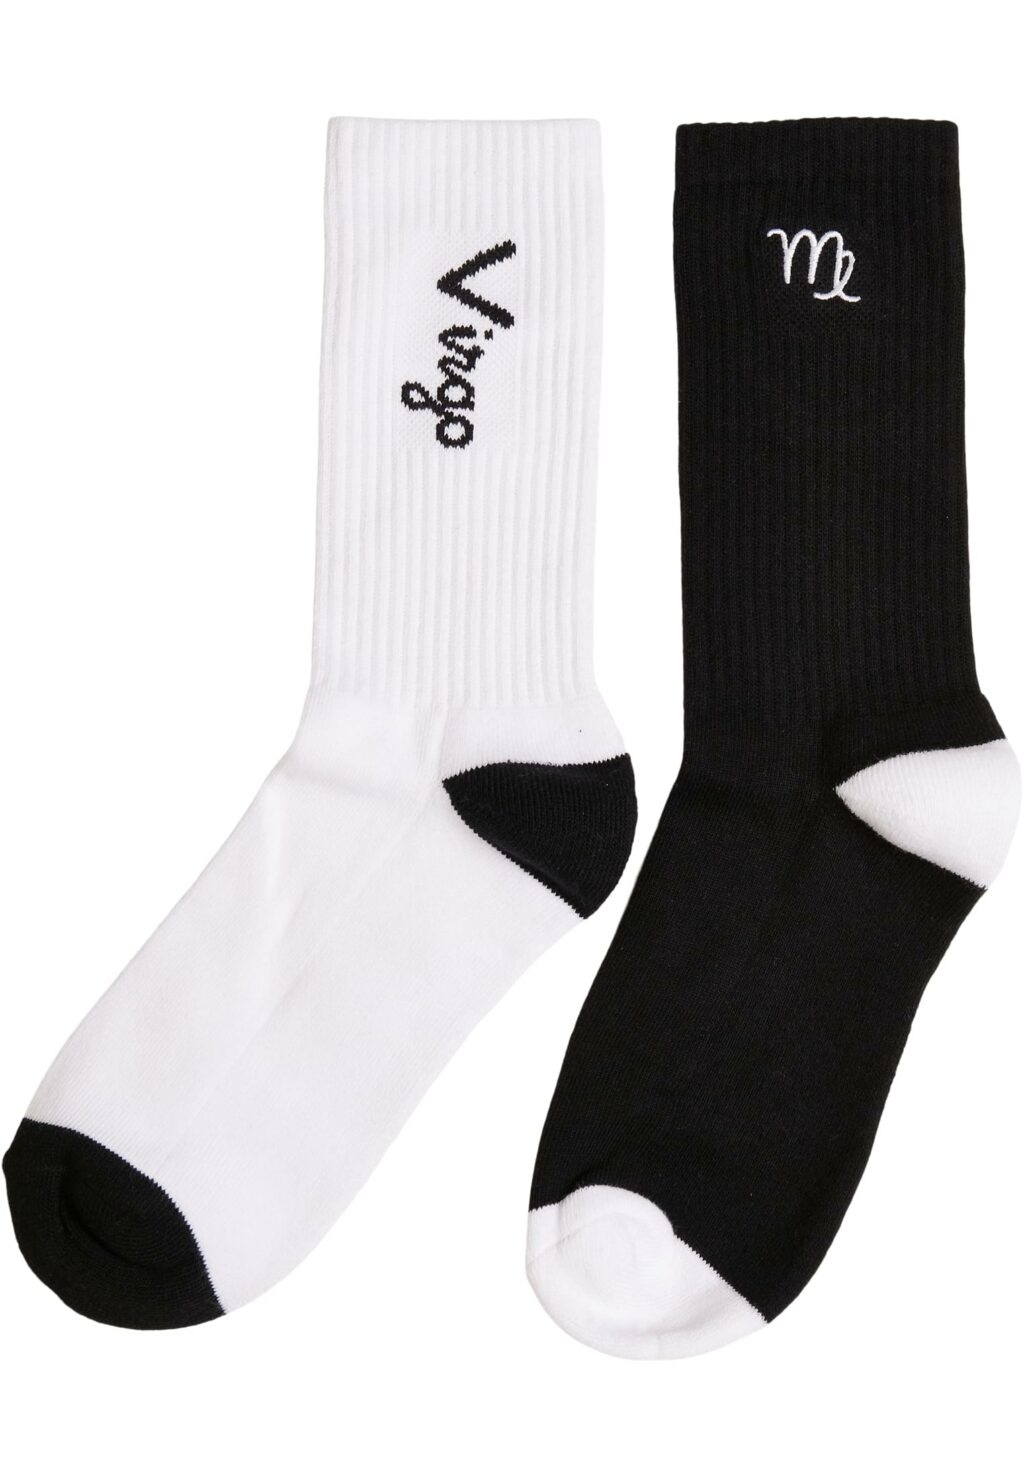 Zodiac Socks 2-Pack black/white virgo MT2235